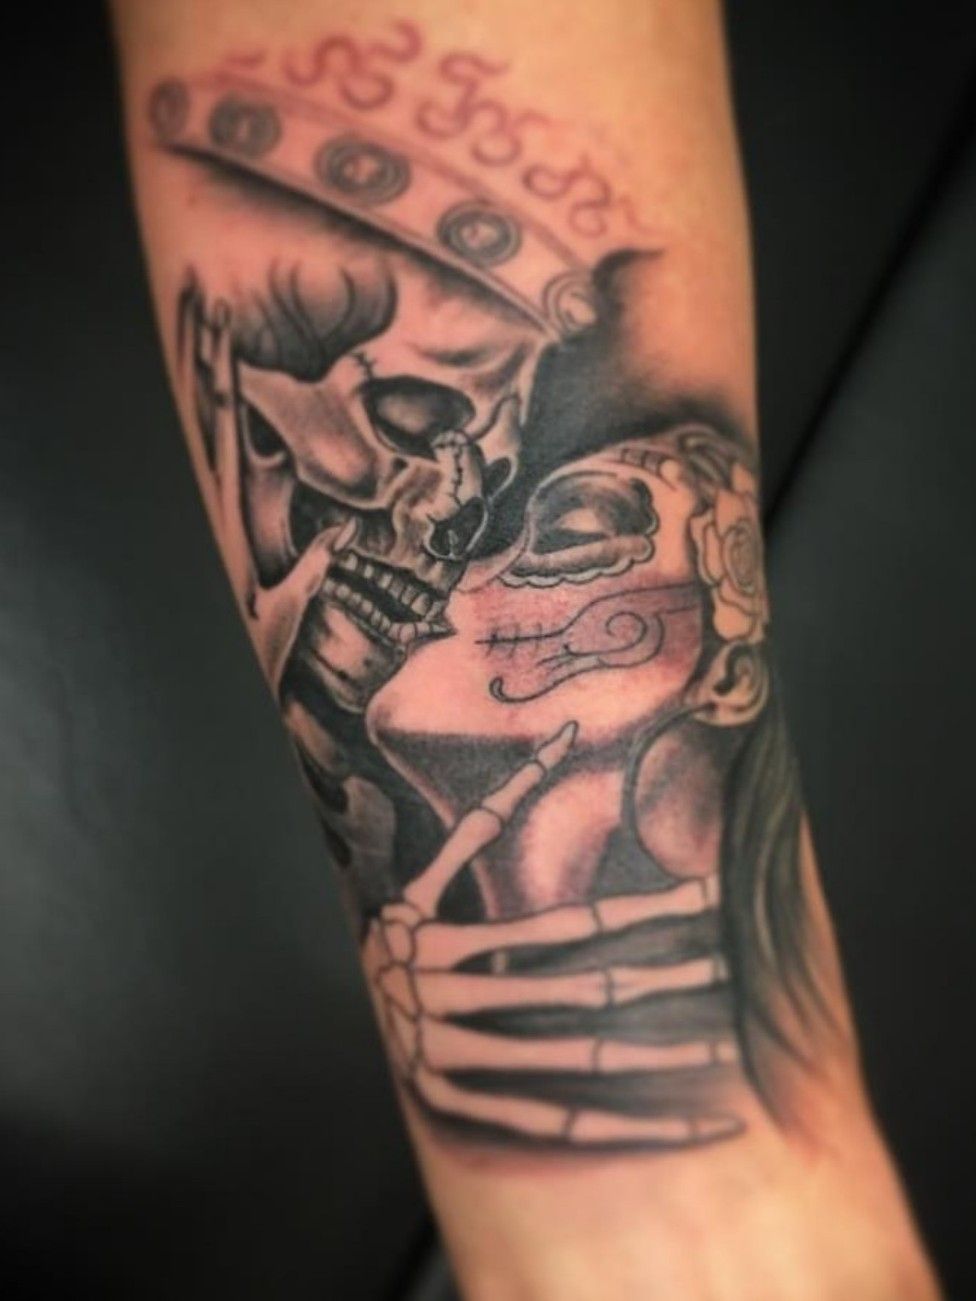 Skeleton kiss tattoo on the forearm